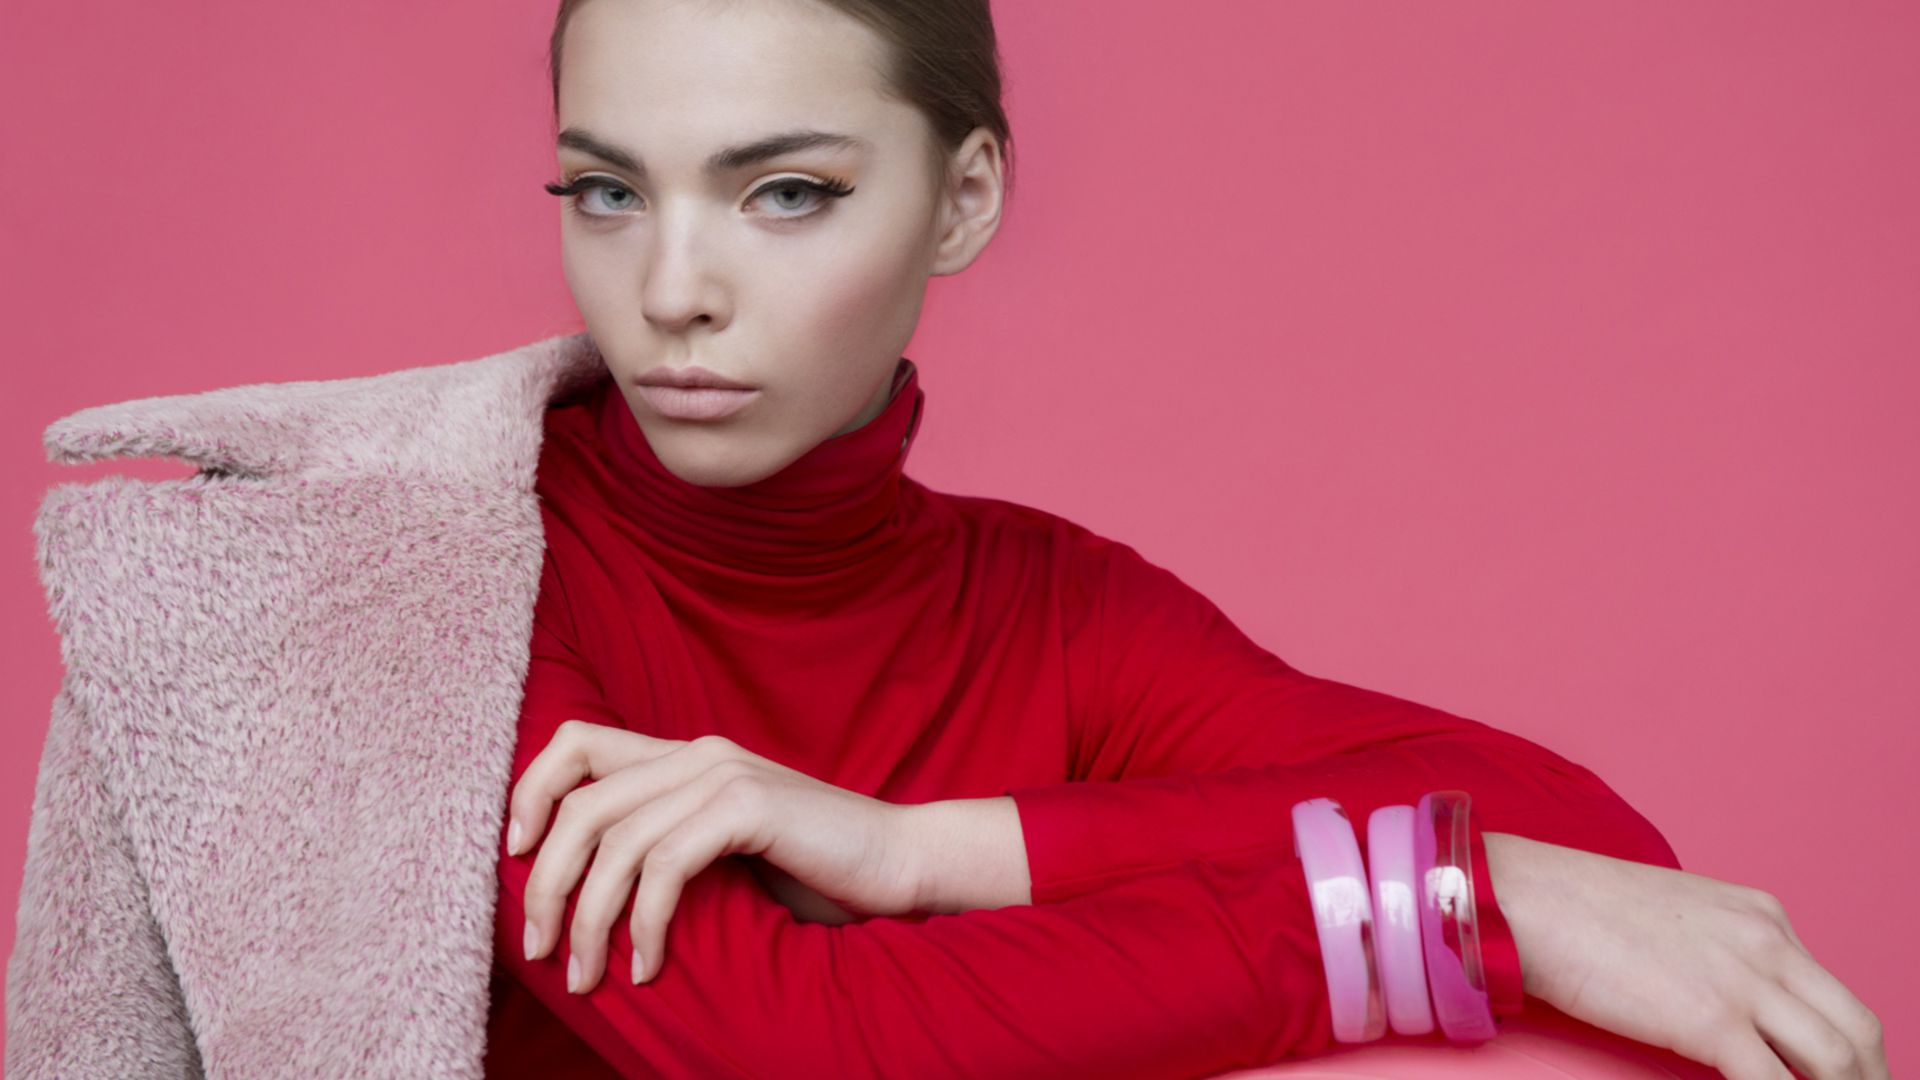 Кася Бельска, Топ модель, розовый, Kasia Bielska, Top Fashion Models, model, pink (horizontal)